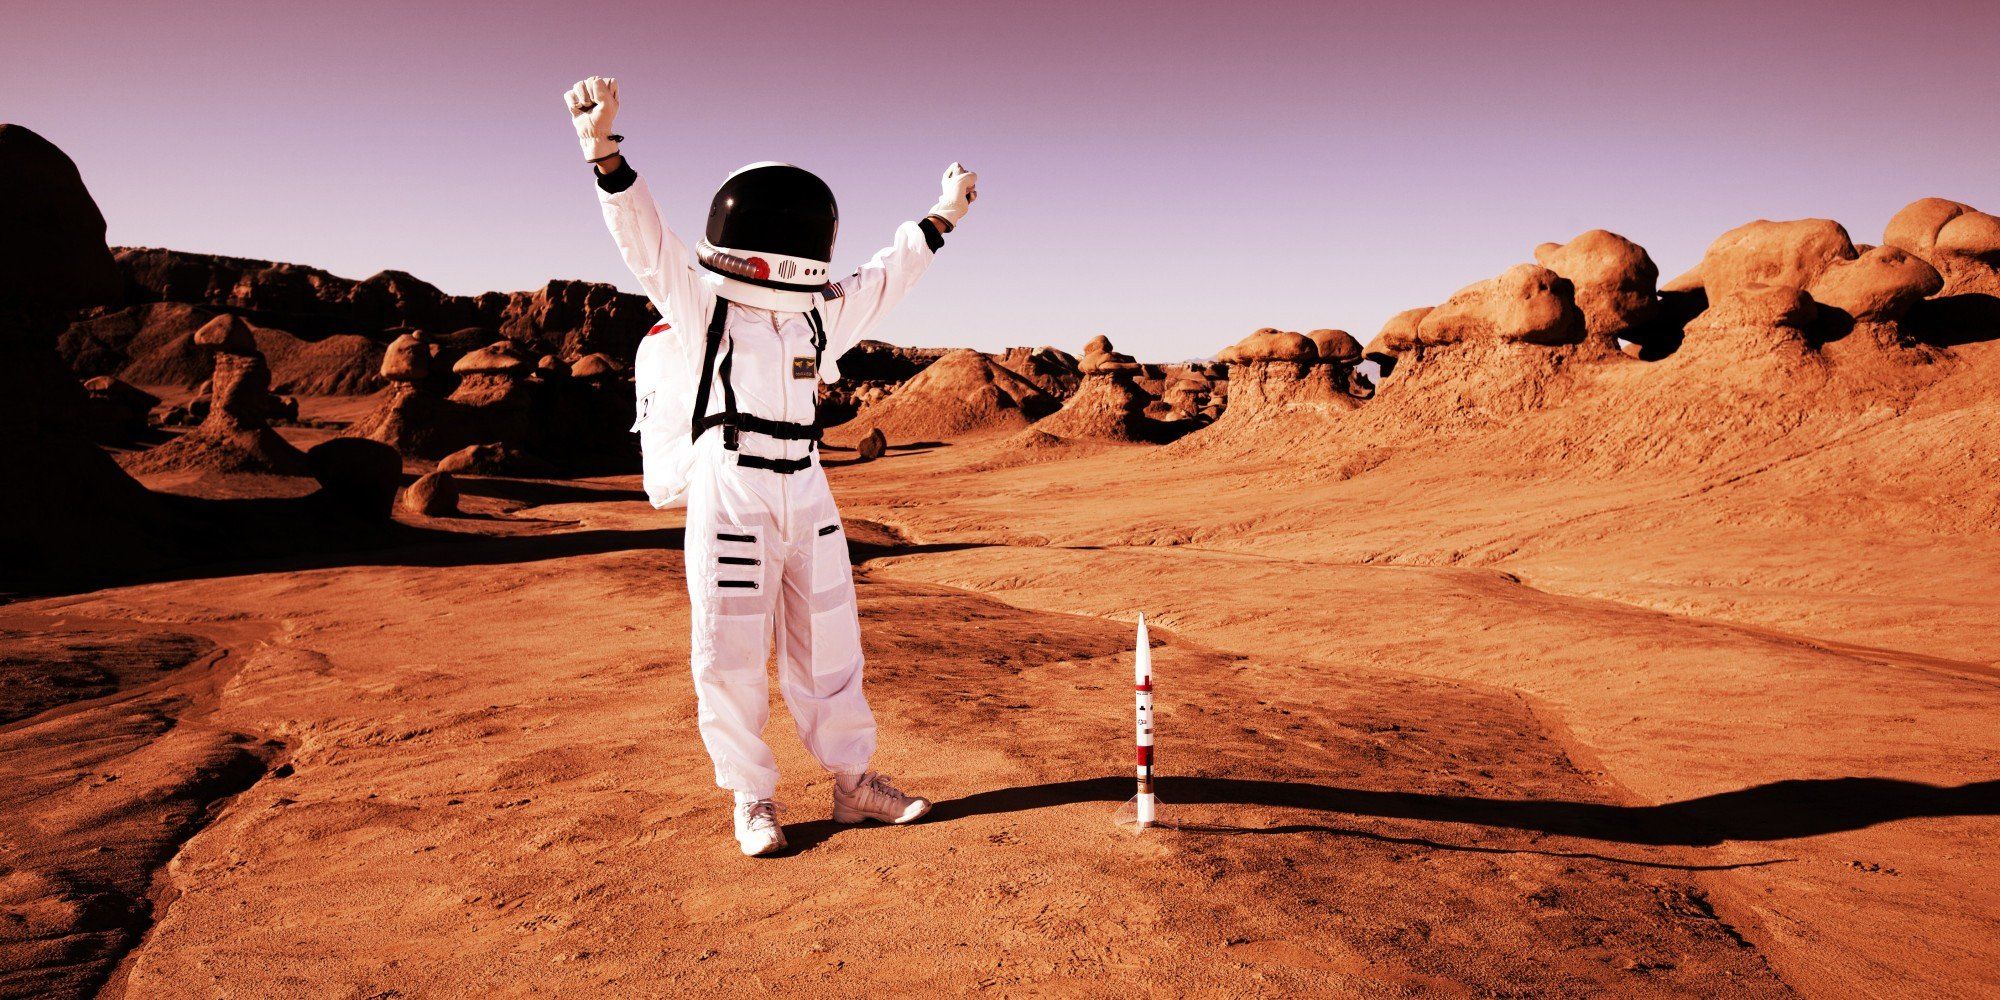 «Есть кислород? А если найду?» — будущее путешествий на Марс зависит от работы системы MOXIE на марсоходе Настойчивость - 1